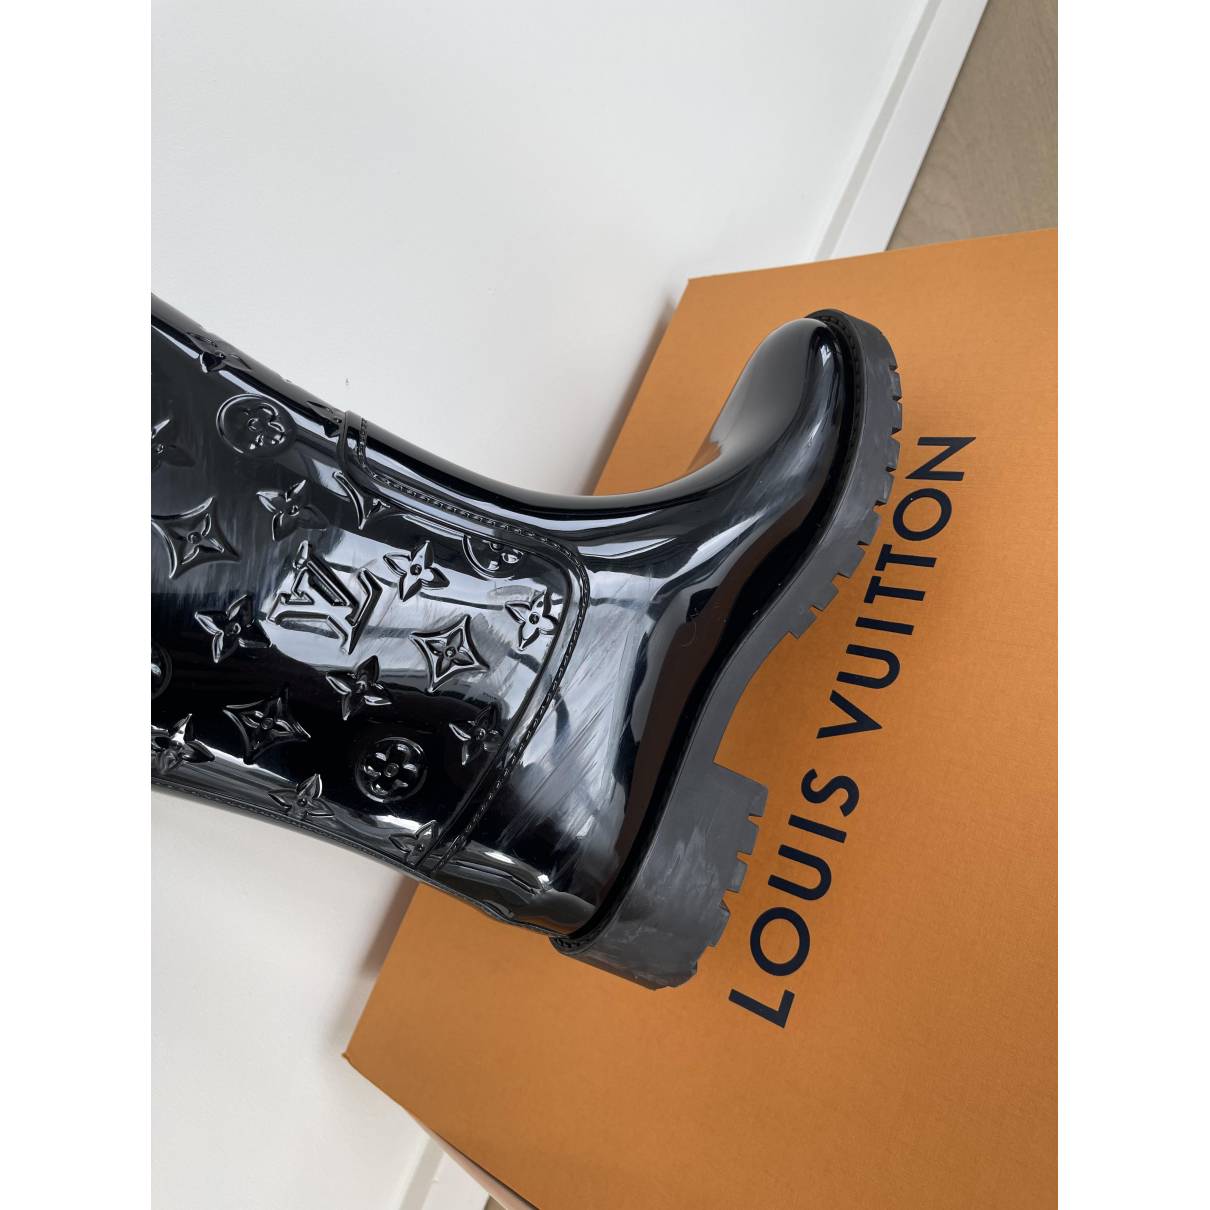 Drops wellington boots Louis Vuitton Black size 40 EU in Rubber - 35810695